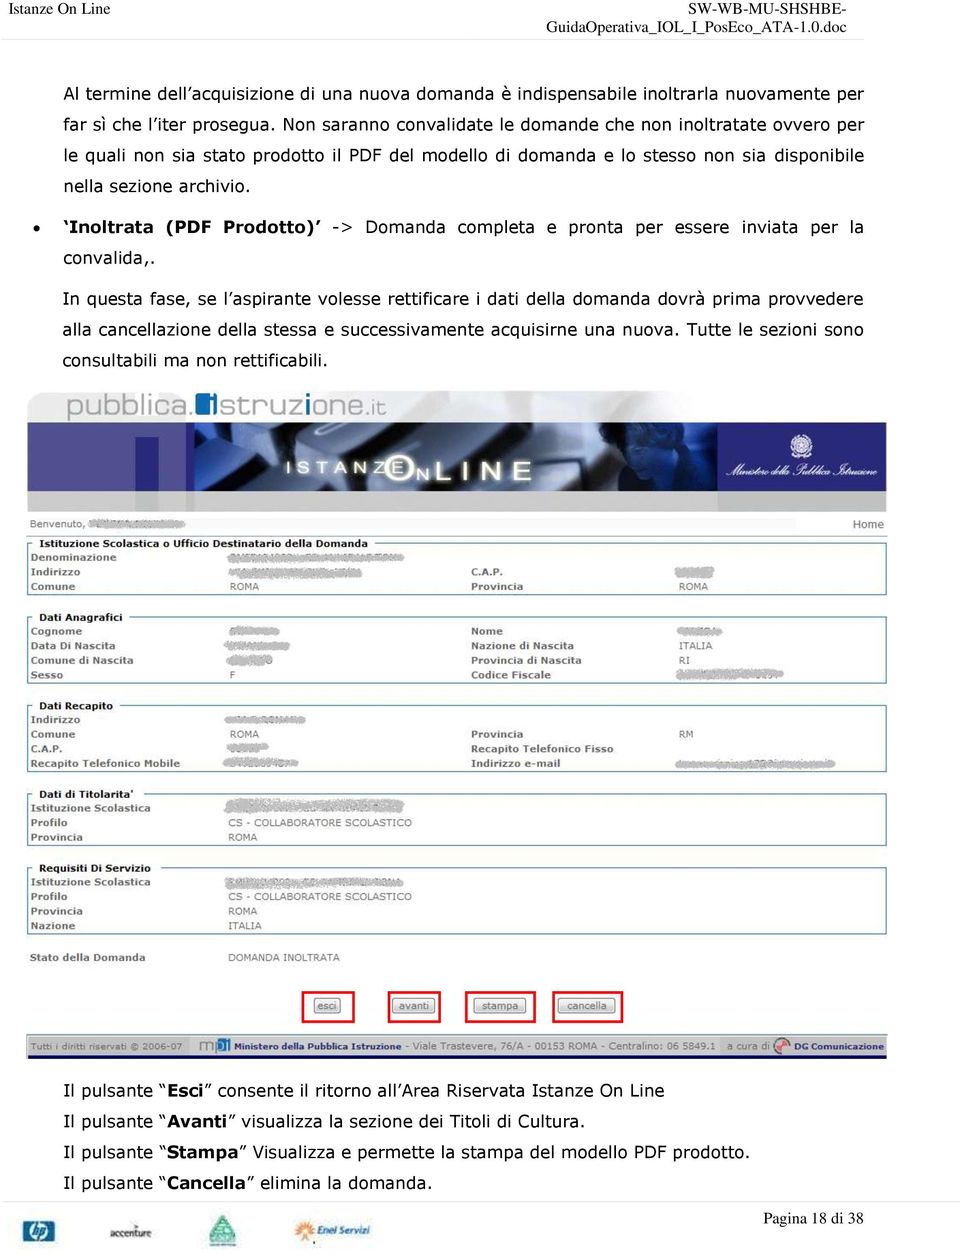 Inoltrata (PDF Prodotto) -> Domanda completa e pronta per essere inviata per la convalida,.